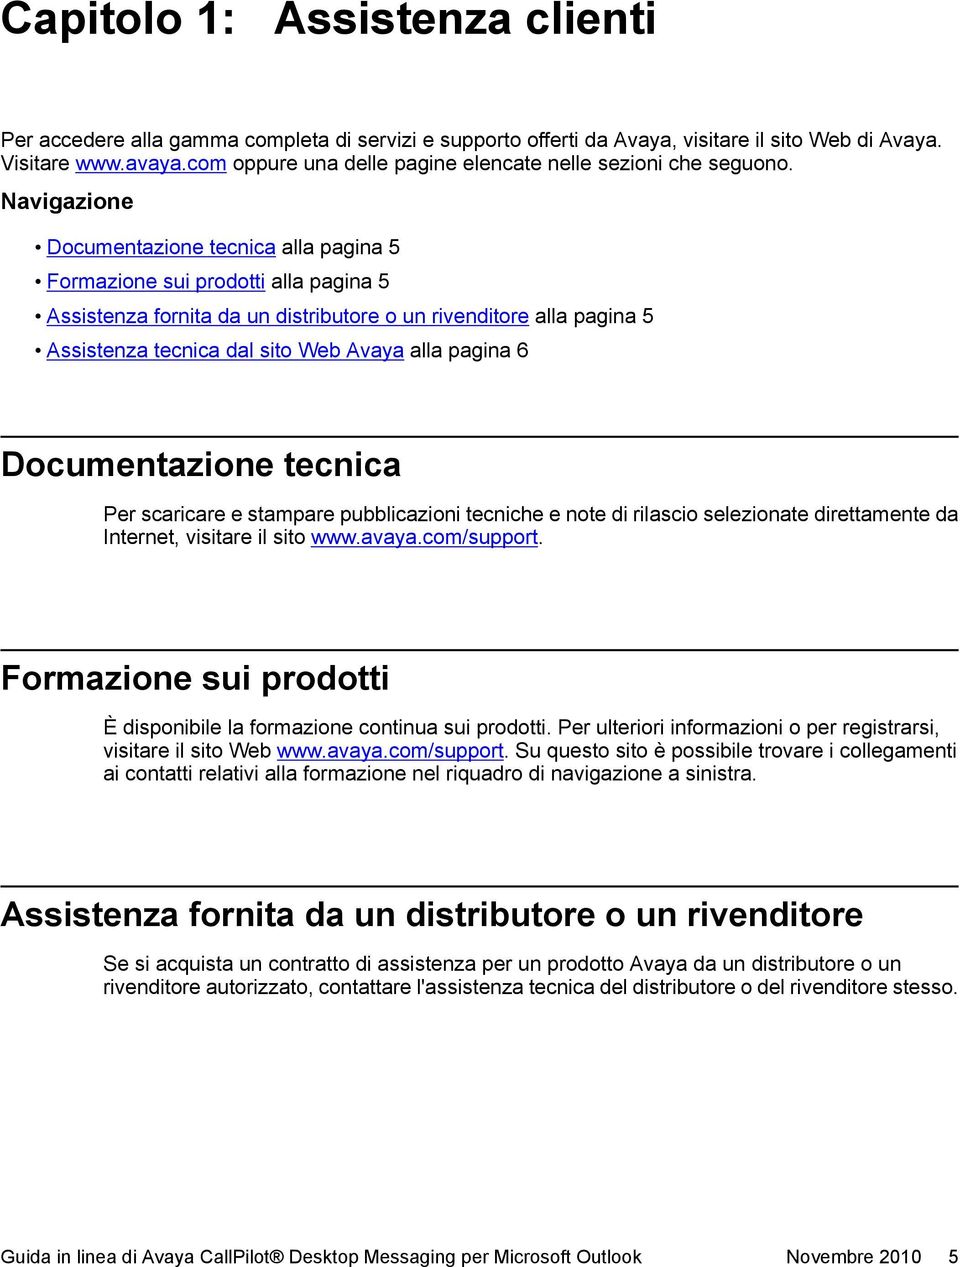 Navigazione Documentazione tecnica alla pagina 5 Formazione sui prodotti alla pagina 5 Assistenza fornita da un distributore o un rivenditore alla pagina 5 Assistenza tecnica dal sito Web Avaya alla